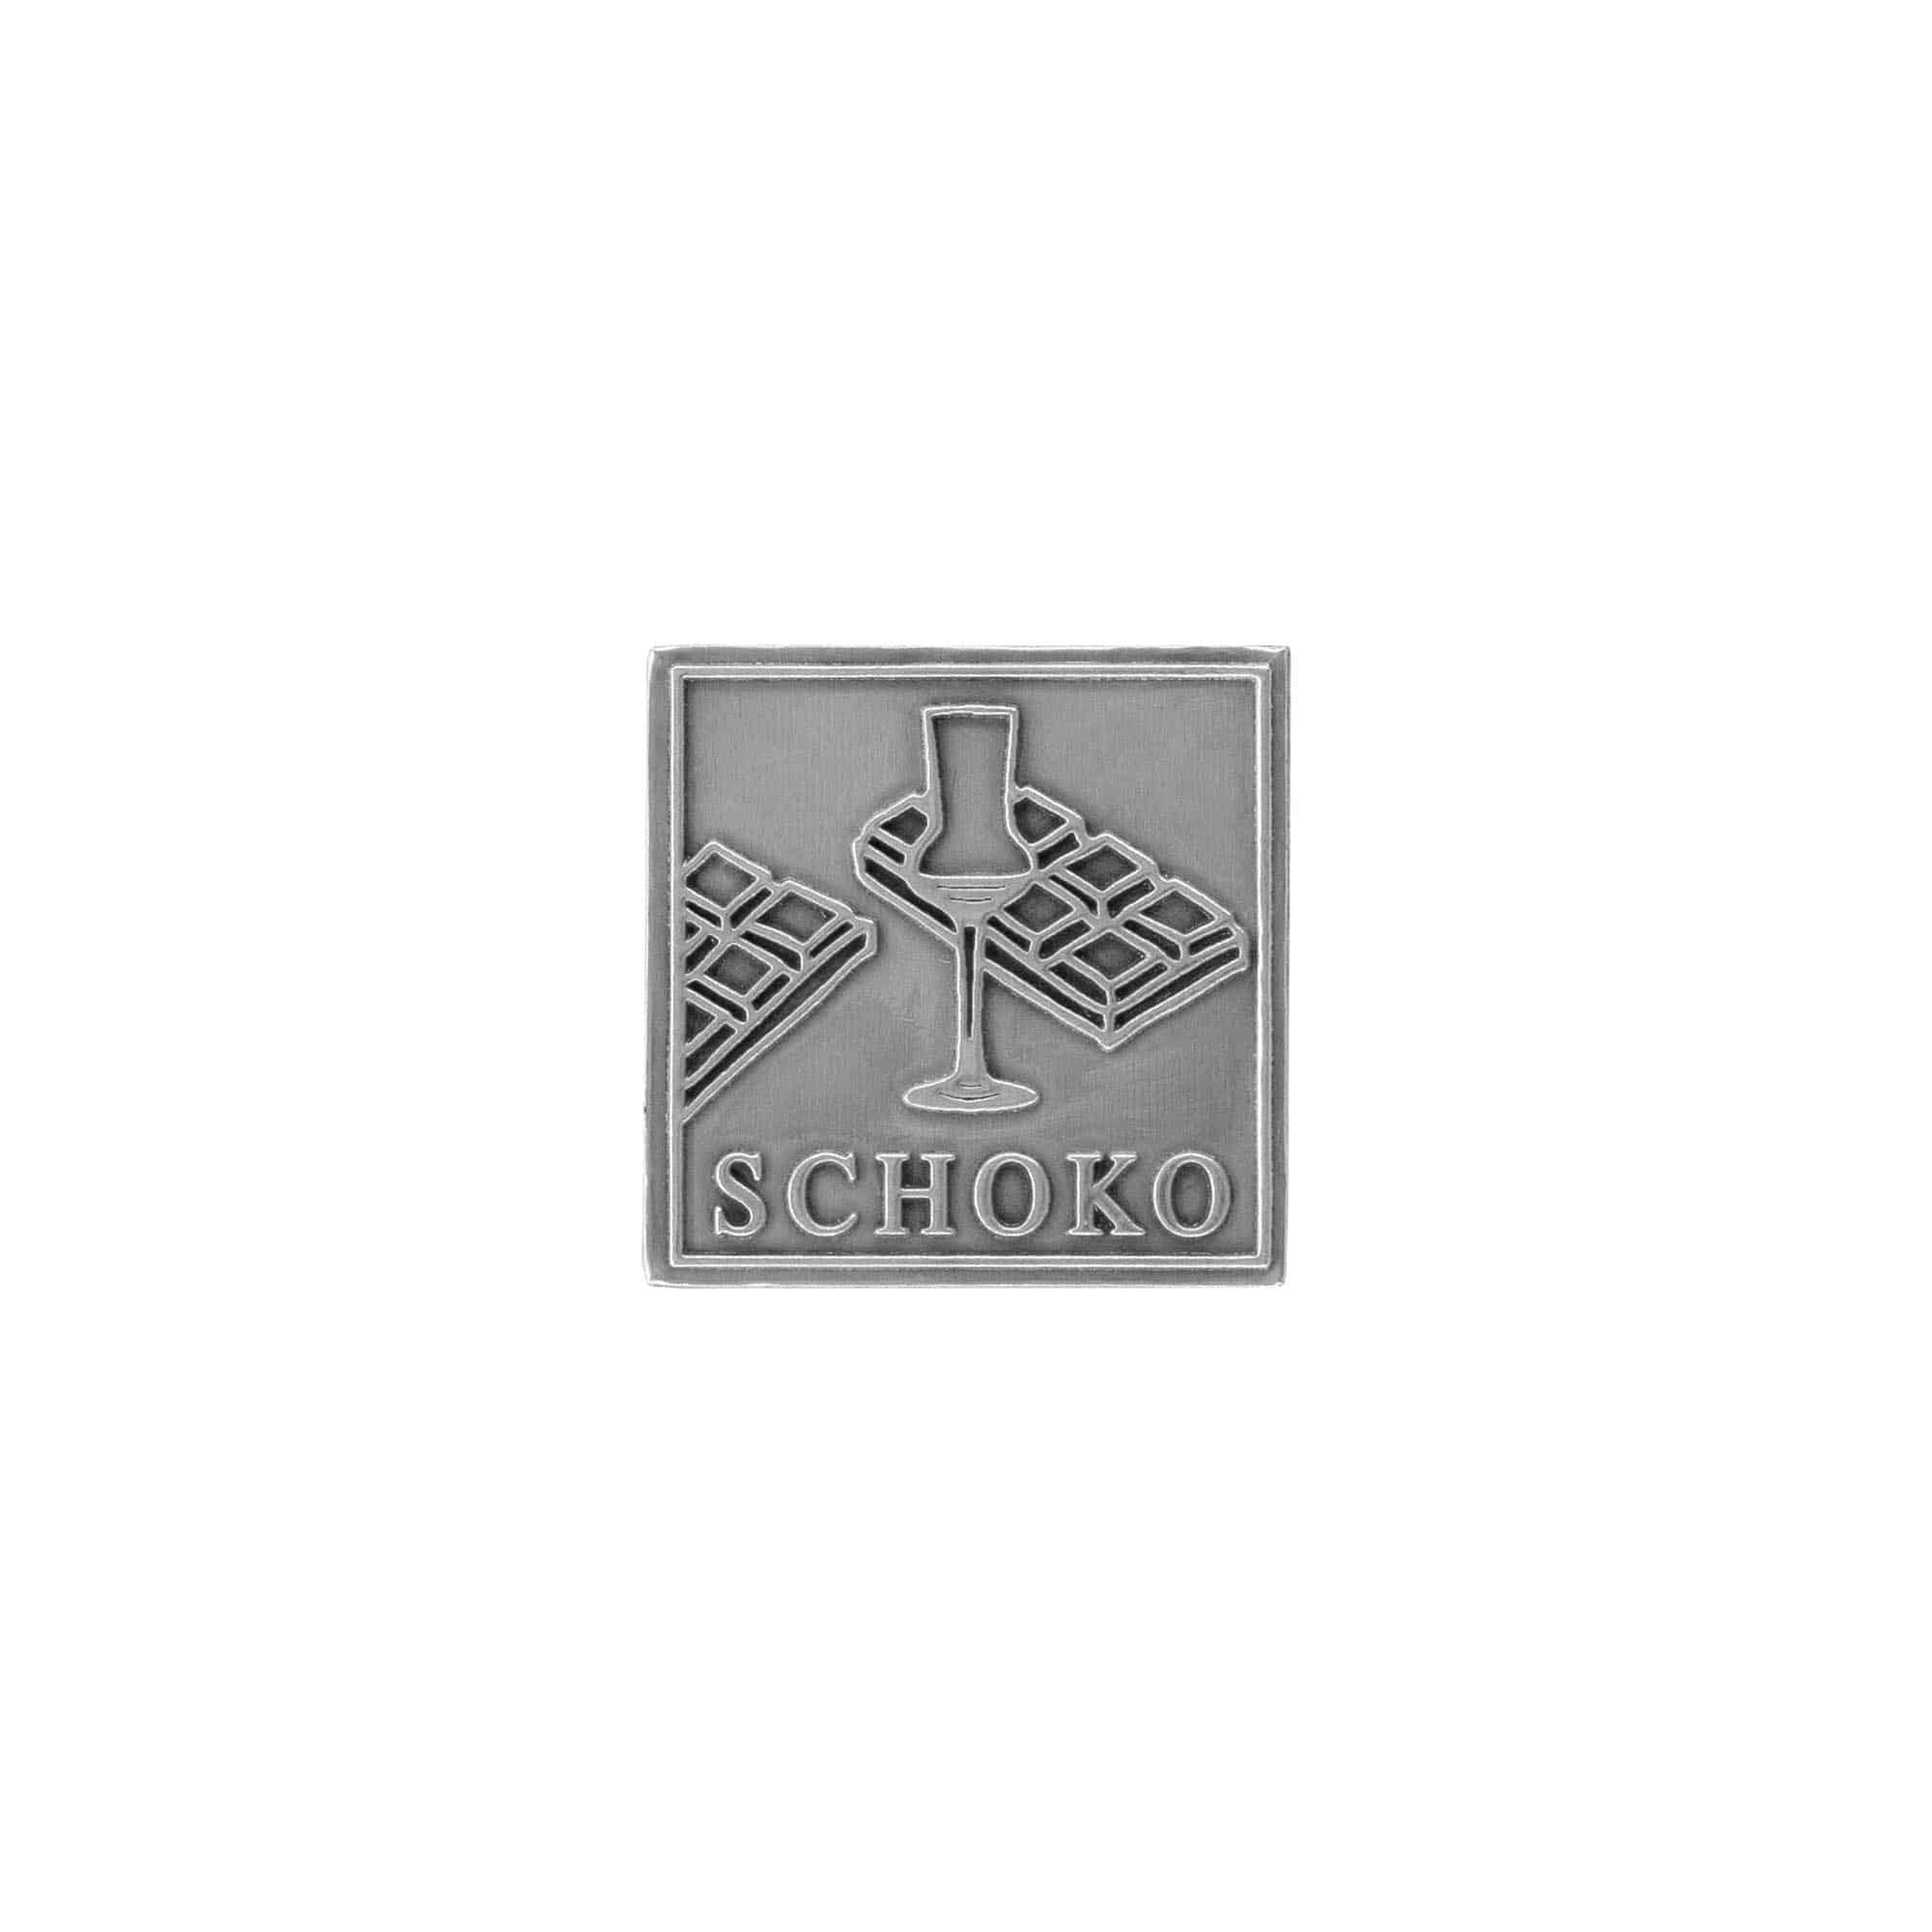 Etykieta cynowa 'Schoko', kwadratowa, metal, kolor srebrny